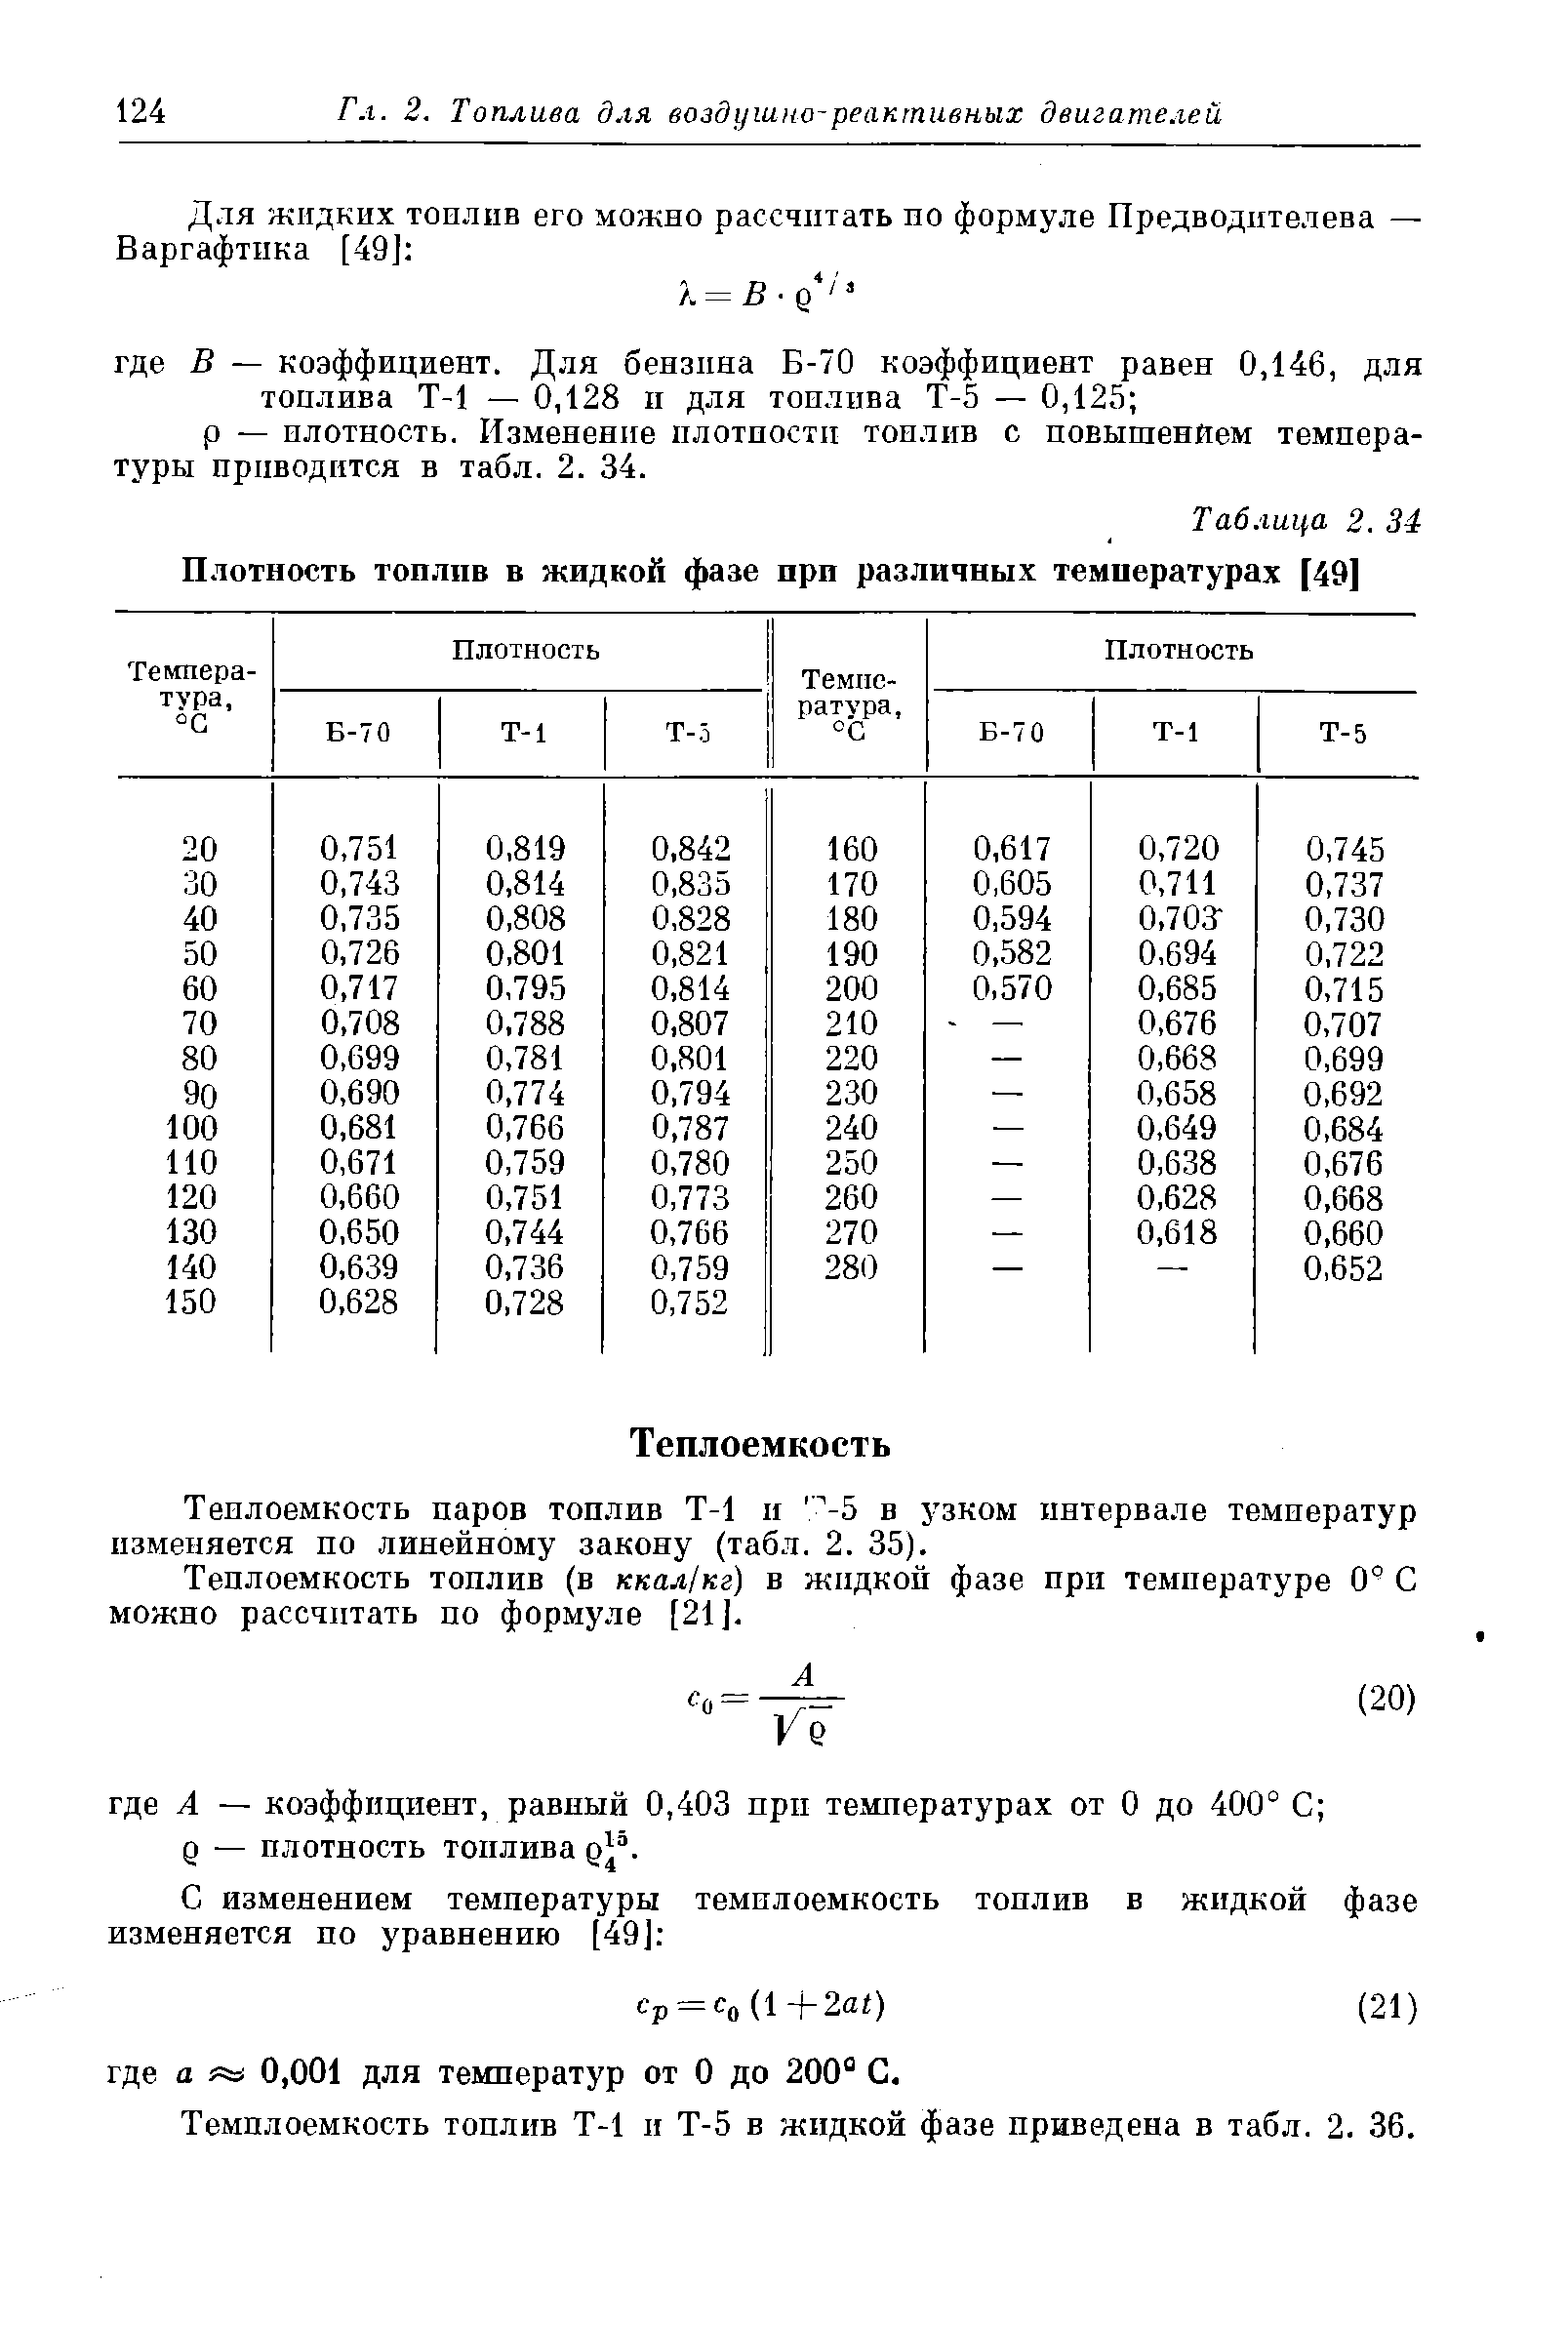 Теплоемкость паров топлив Т-1 и -5 в узком интервале температур изменяется по линейному закону (табл. 2. 35).